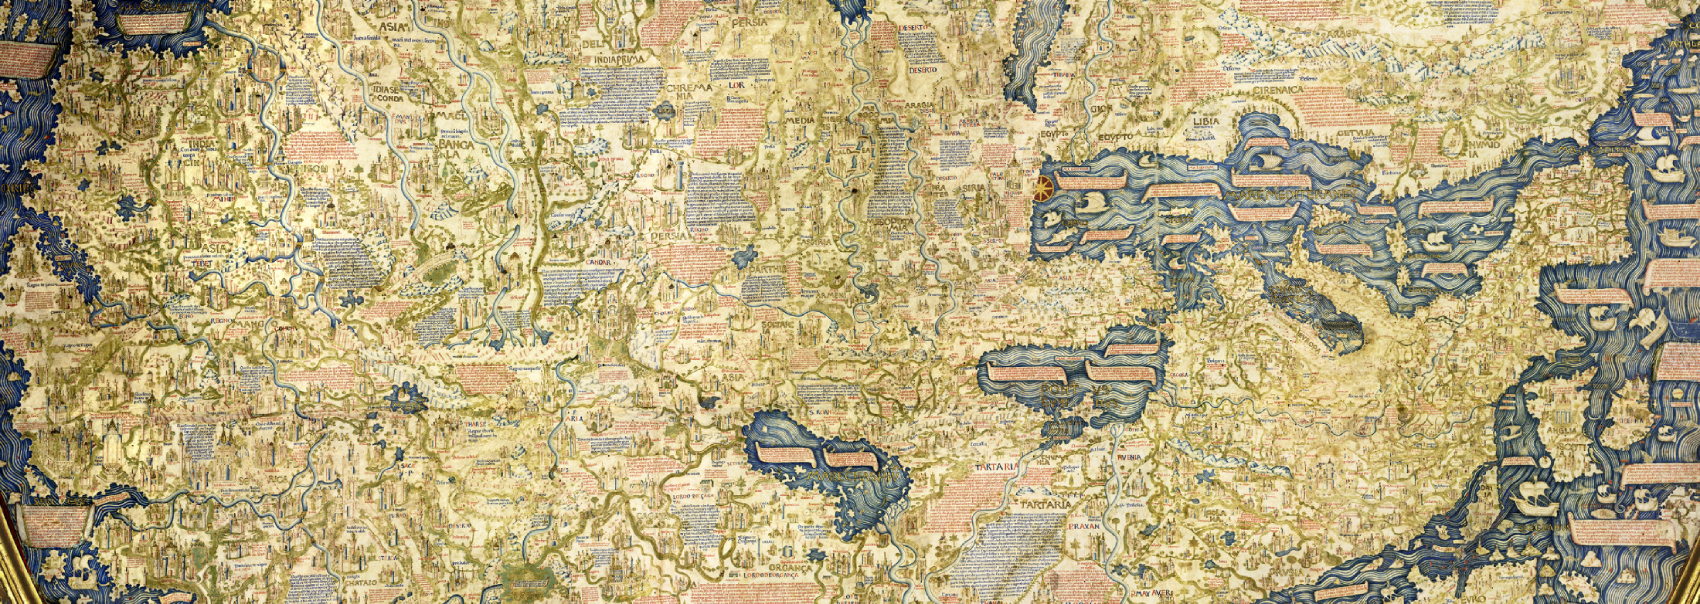 Europa und Zentralasien auf der Weltkarte des Fra Mauro